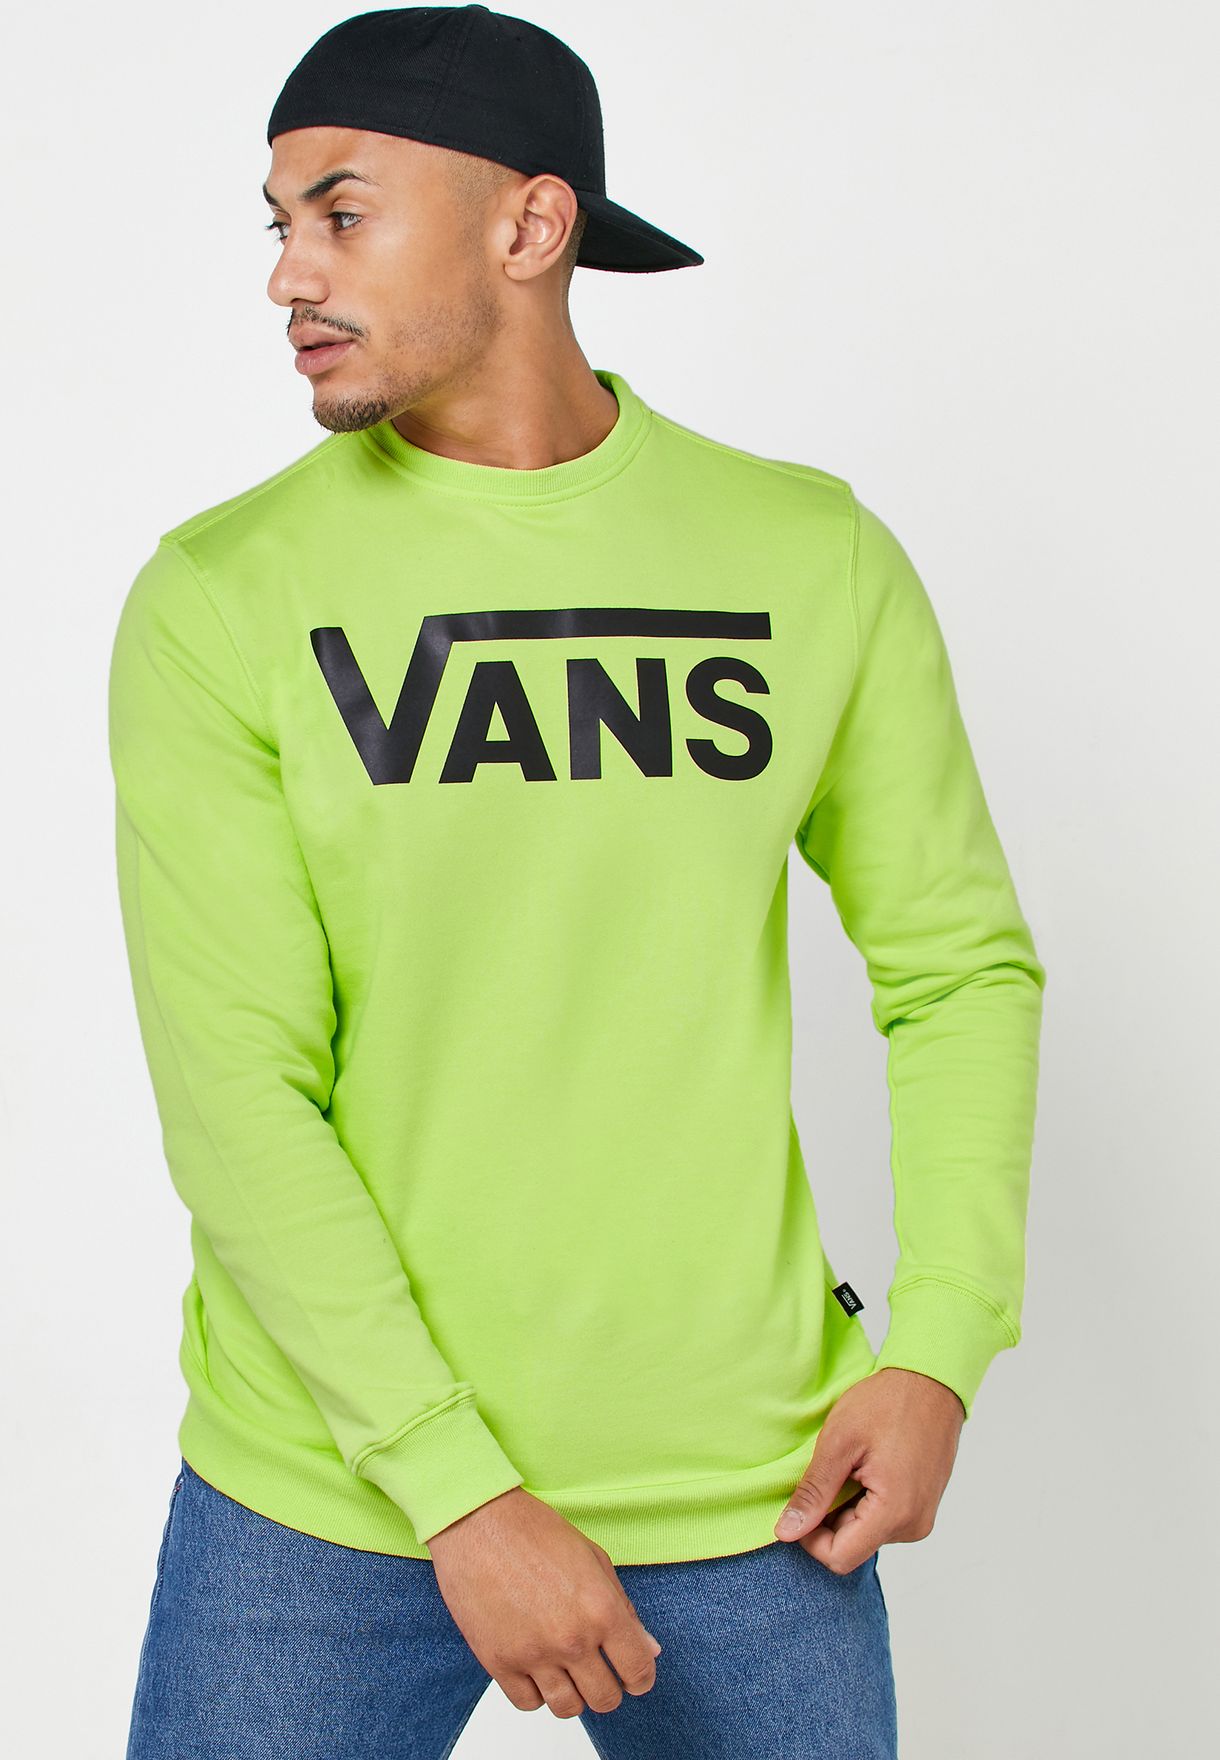 vans green jumper